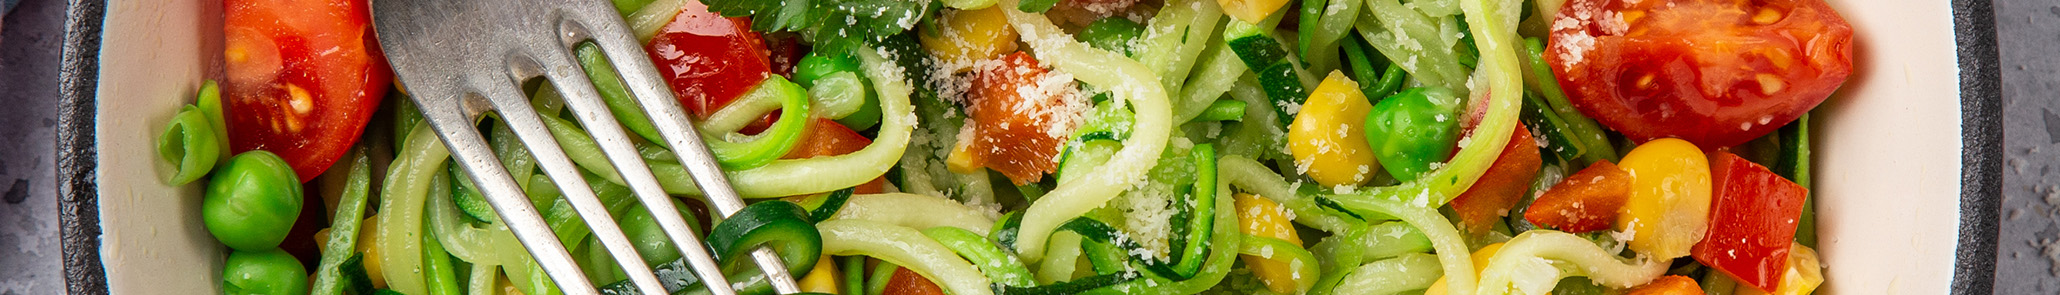  Summer Pasta Salad With Grilled Zucchini, Corn and Cilantro Pesto 